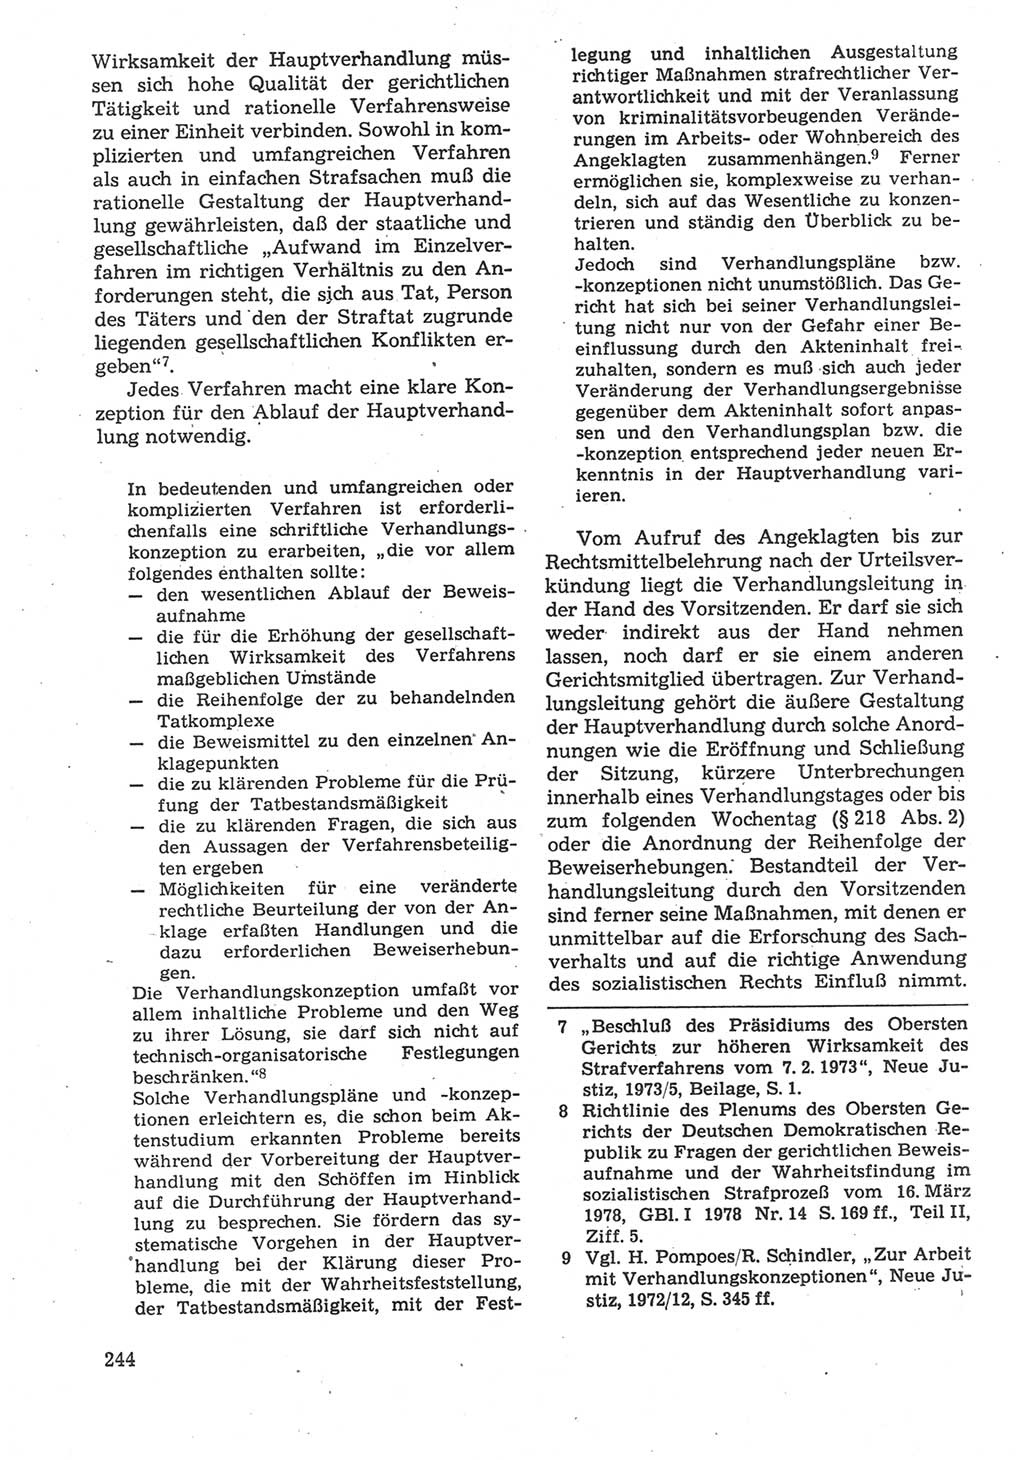 Strafverfahrensrecht [Deutsche Demokratische Republik (DDR)], Lehrbuch 1987, Seite 244 (Strafverf.-R. DDR Lb. 1987, S. 244)